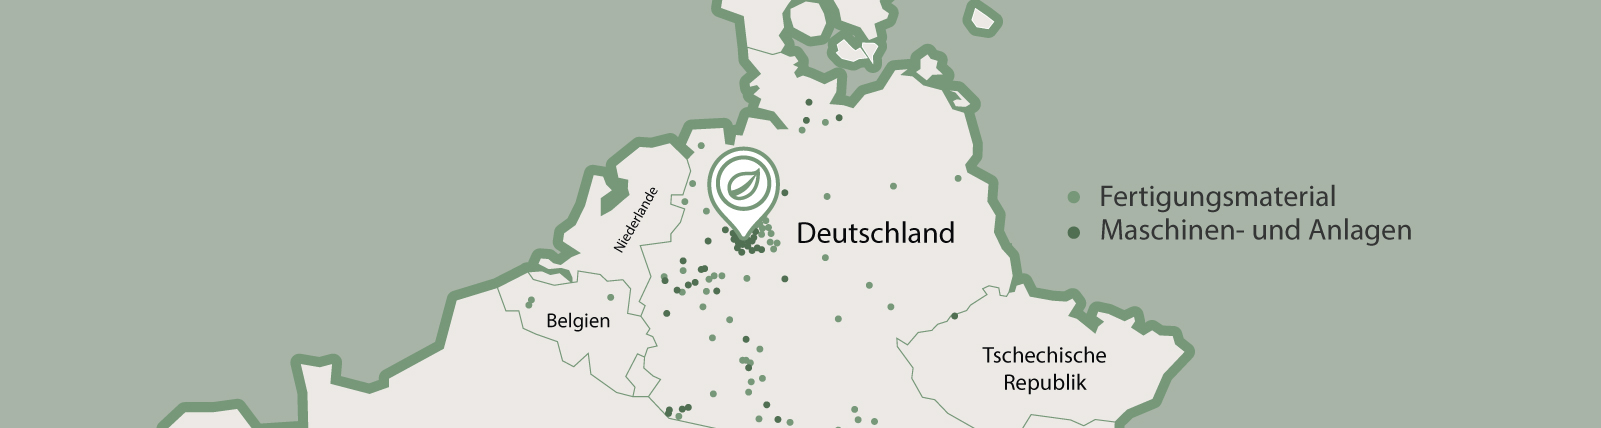 Mapa interactivo que destaca las principales regiones industriales para la fabricación de materiales y maquinaria en Alemania, con iconos y etiquetas fáciles de leer para una navegación amigable para el usuario.